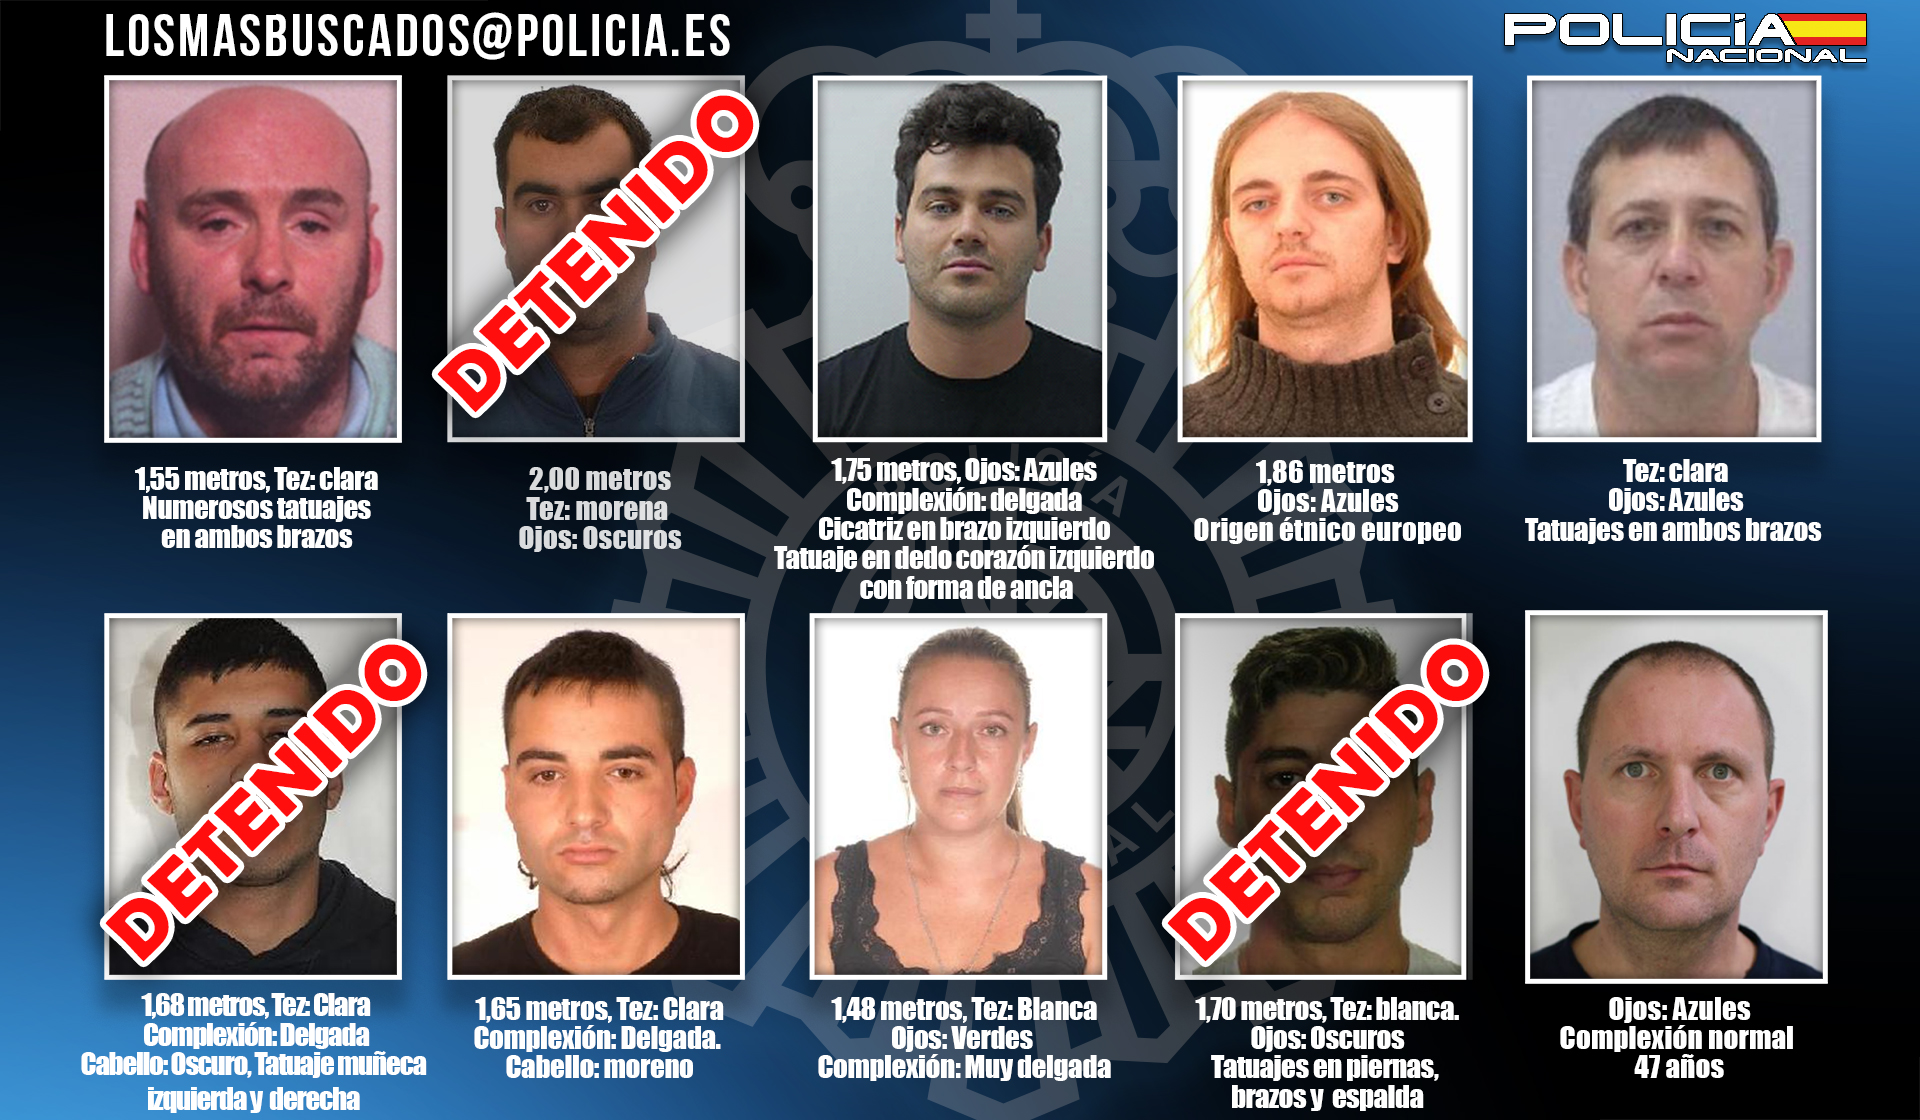 La Policía Nacional detiene a otro fugitivo incluido en la lista “LOS MÁS BUSCADOS”